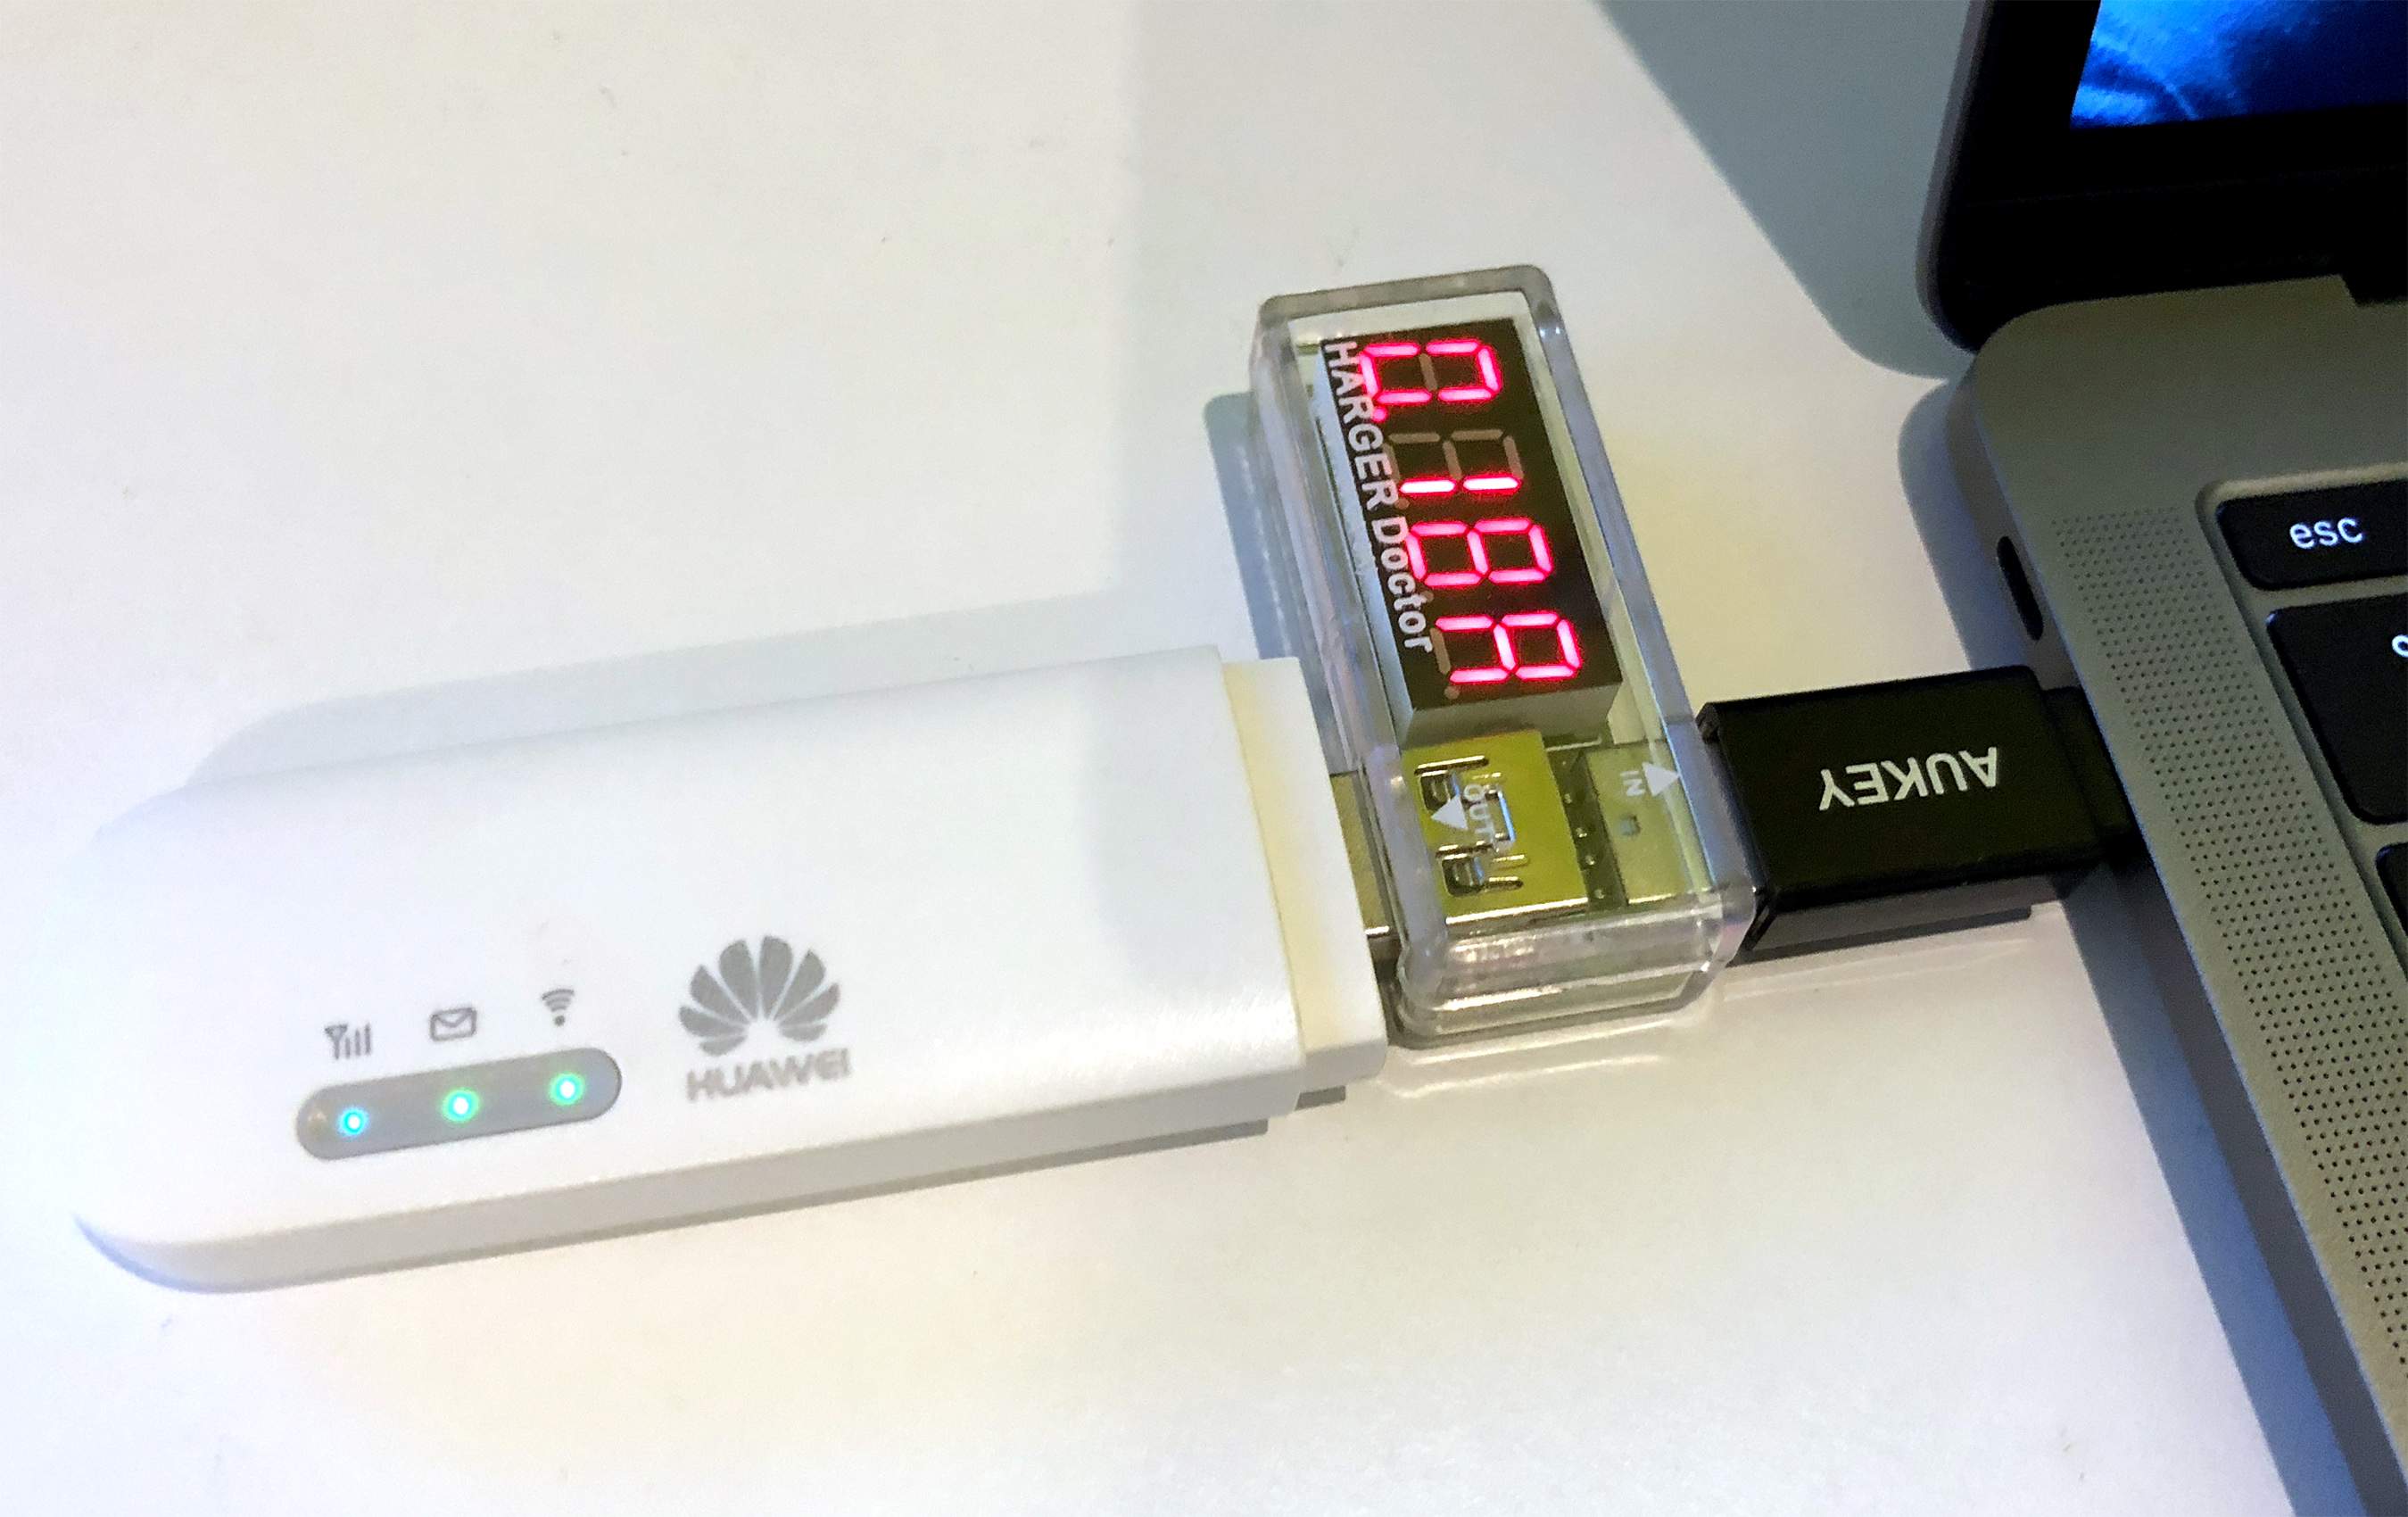 Huawei 8372. Huawei USB e8372. 3g модем f5321. Huawei e8372h-320. Гермобокс Huawei 8372.